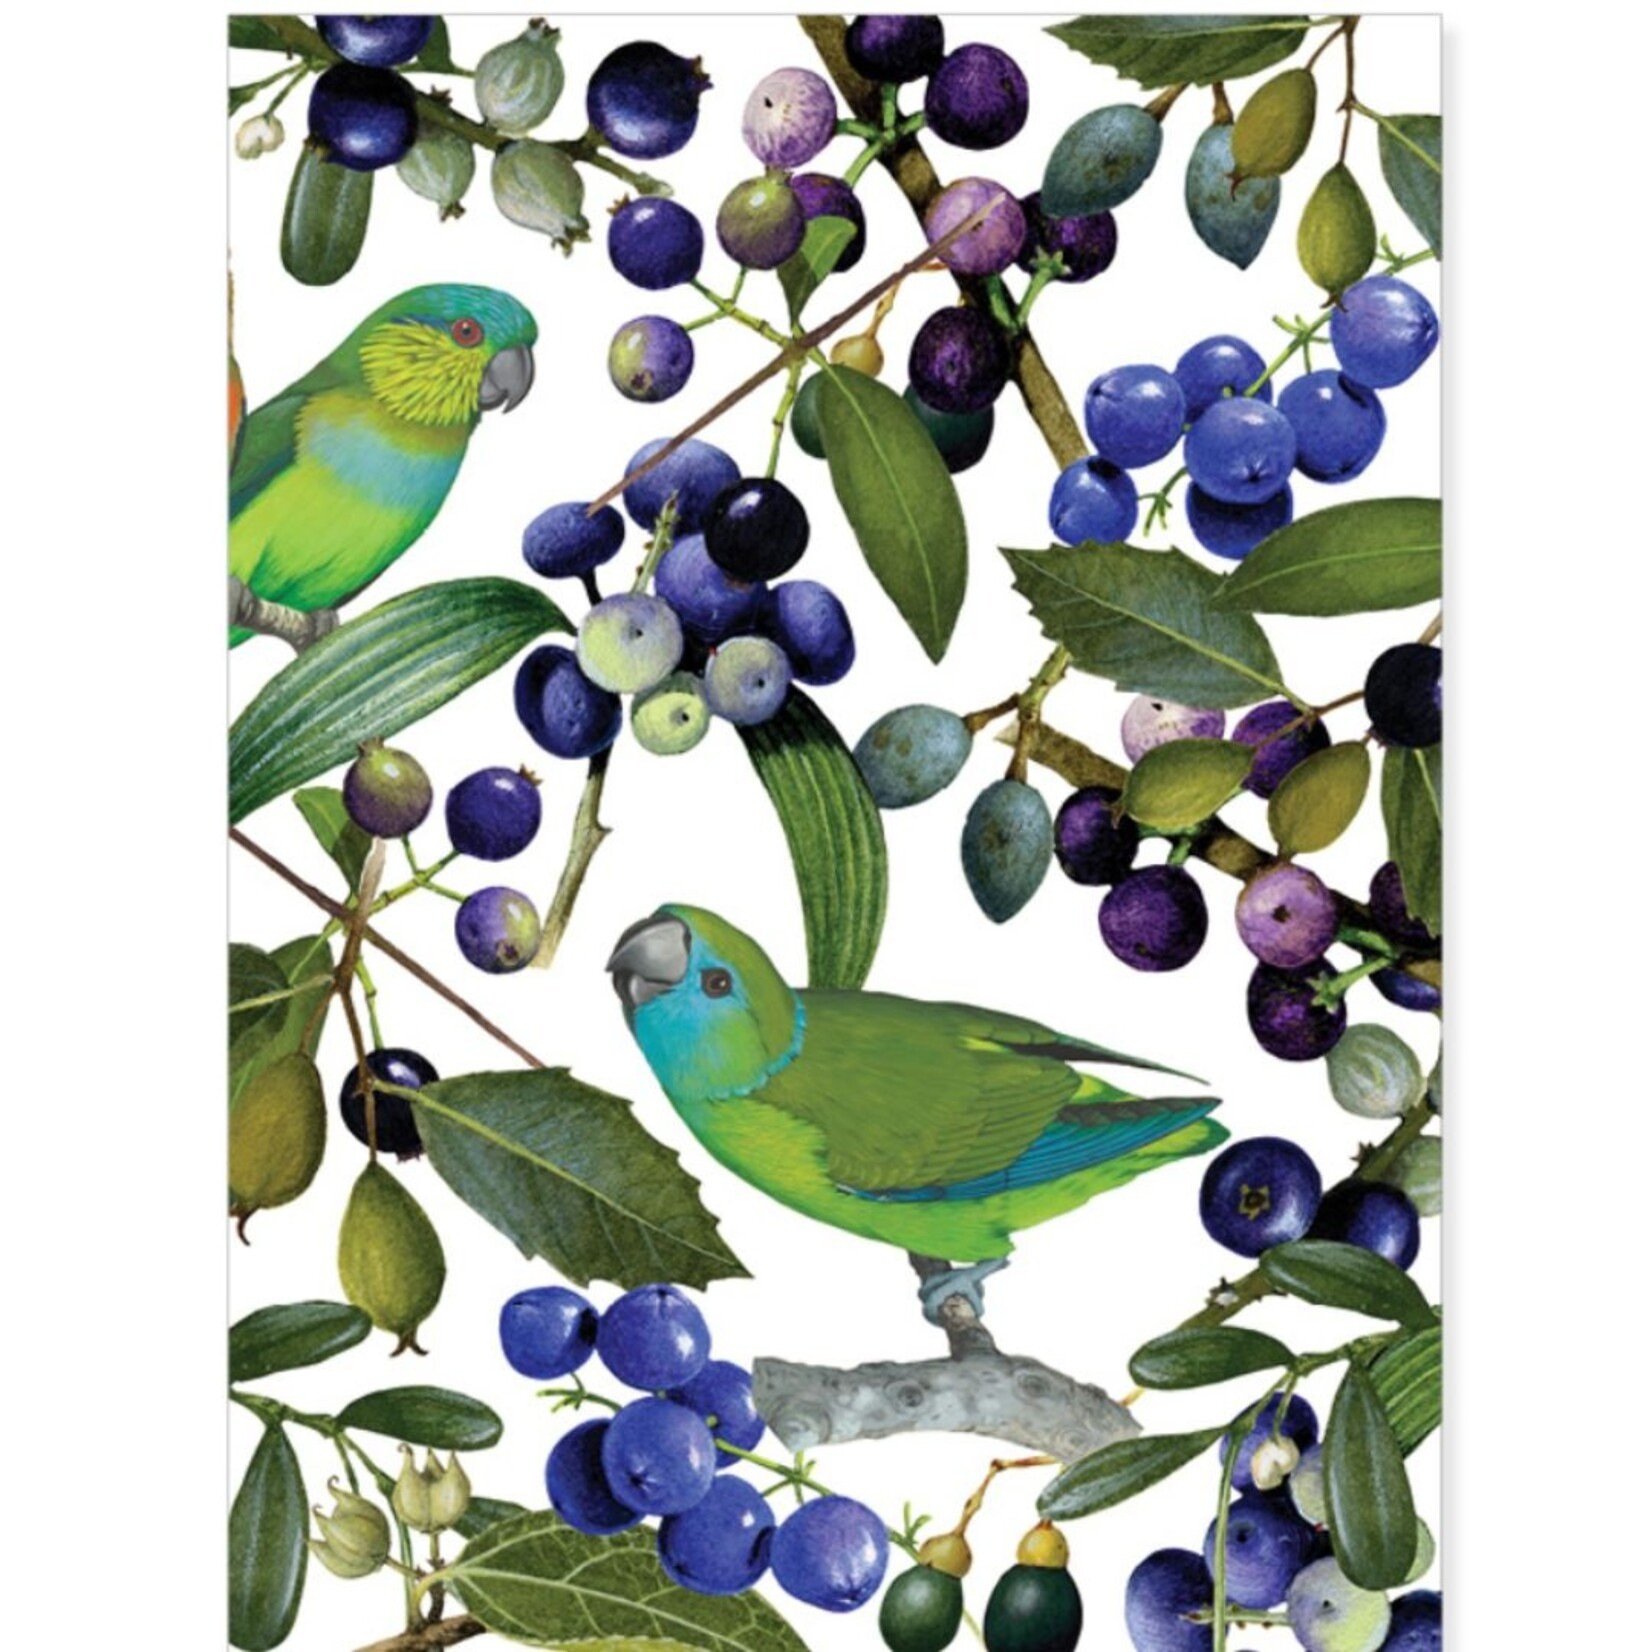 William T Cooper, Fig Parrot & Dianella Caerulea | Tea towel